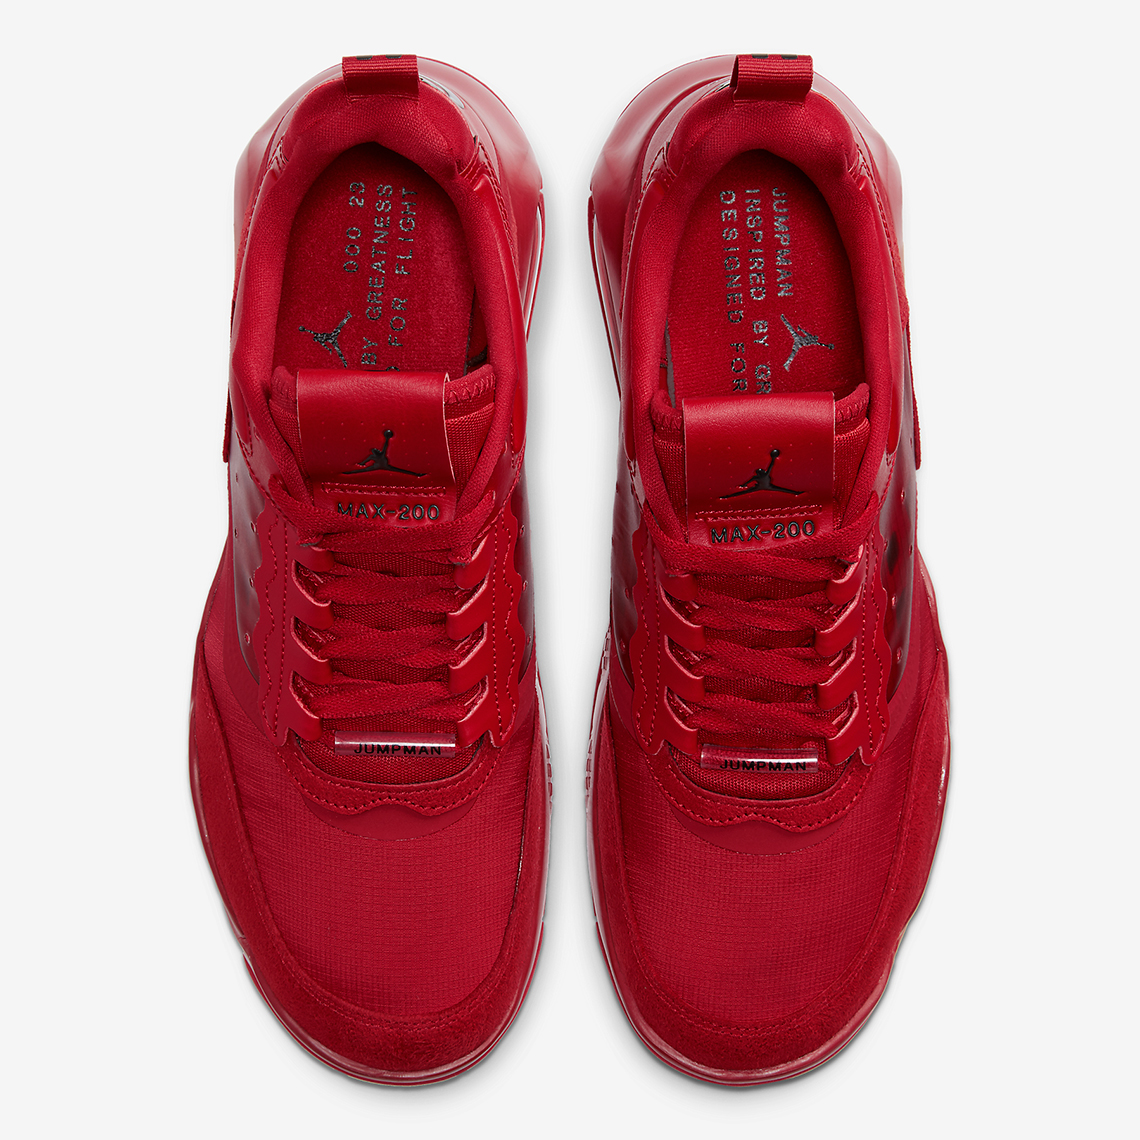 Jordan Max 200 Red Cd6105 602 4